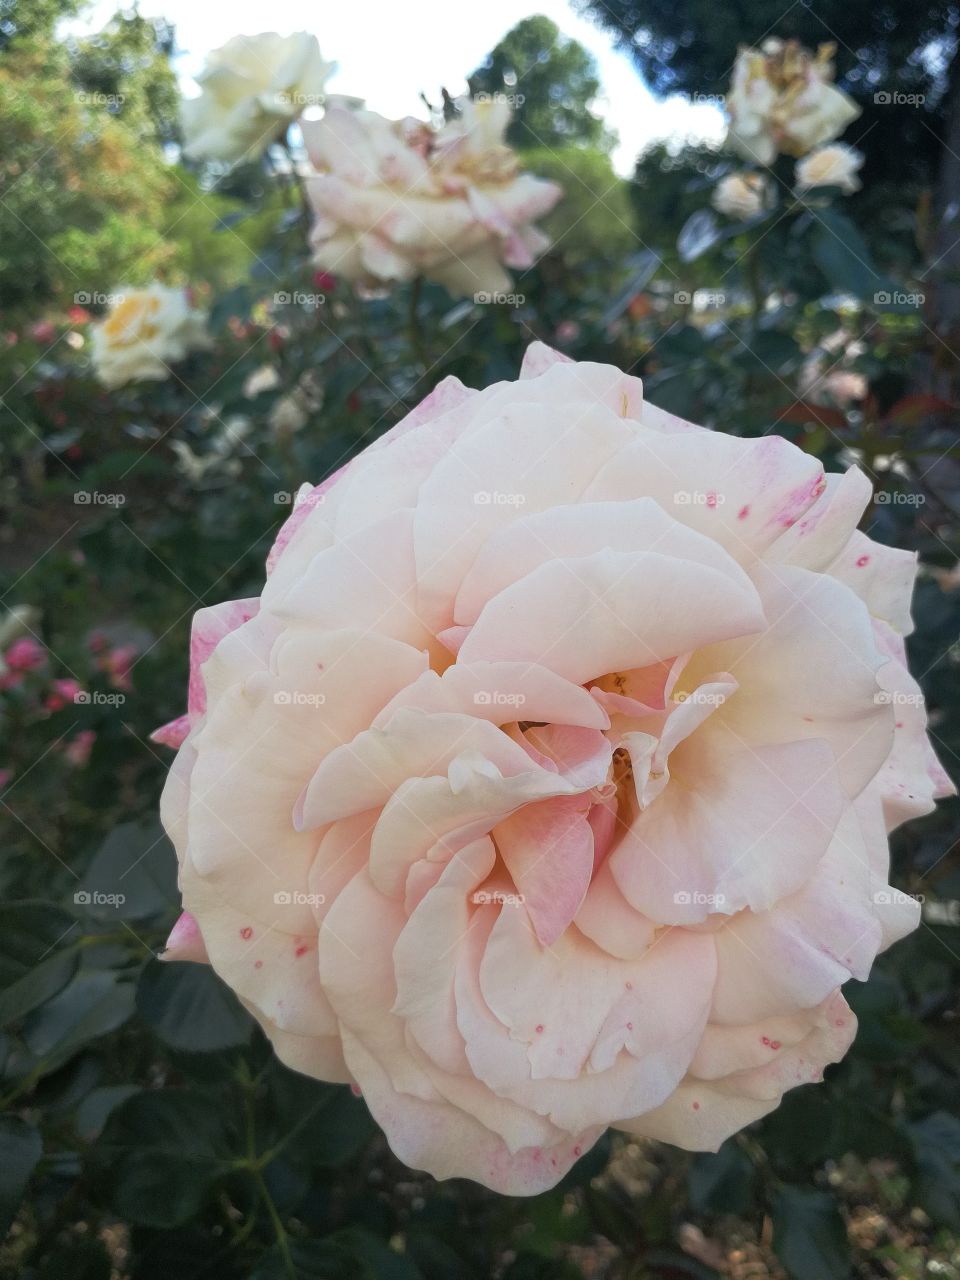 White rose in botanical garden